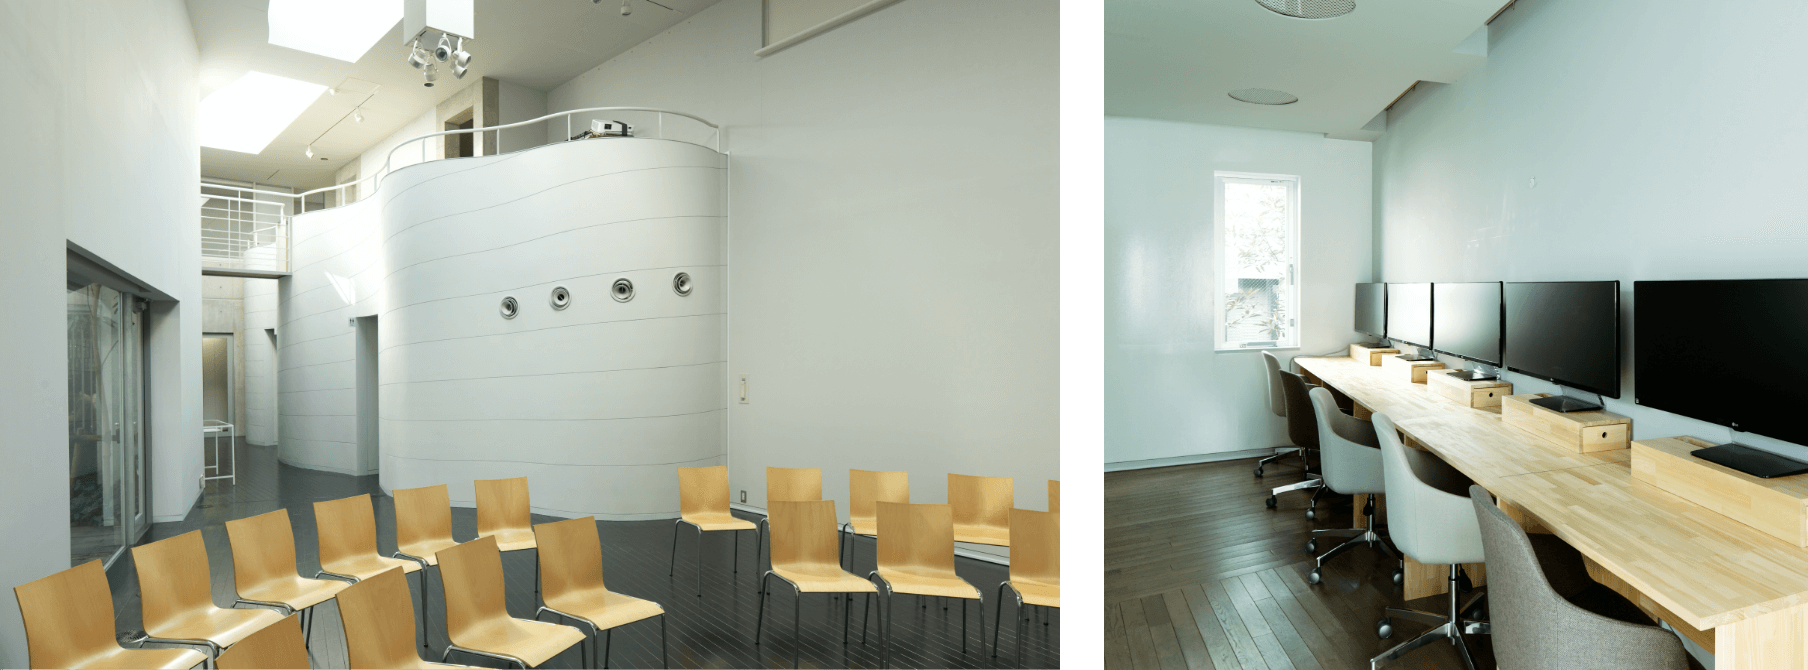 amuの風景写真。2枚の写真で構成されており、左がホールのようなコミュニケーションスペースの写真、右がサテライトオフィスとして使用されている執務室の写真